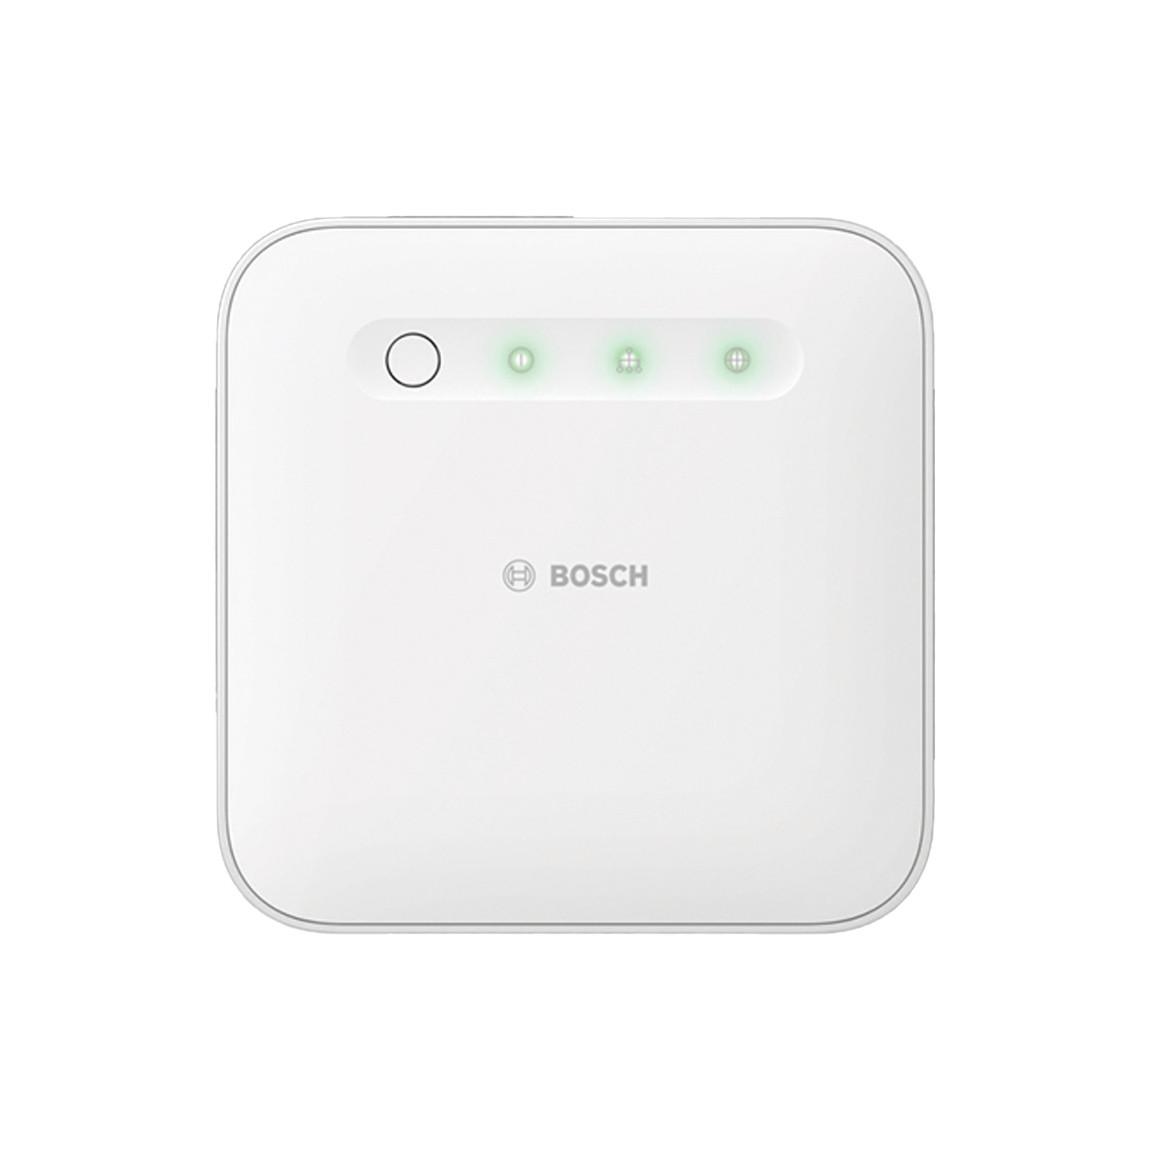 Bosch Smart Home - Starter Set Licht-/ Rollladensteuerung mit 2 Unterputz-Aktoren_Controller frontal